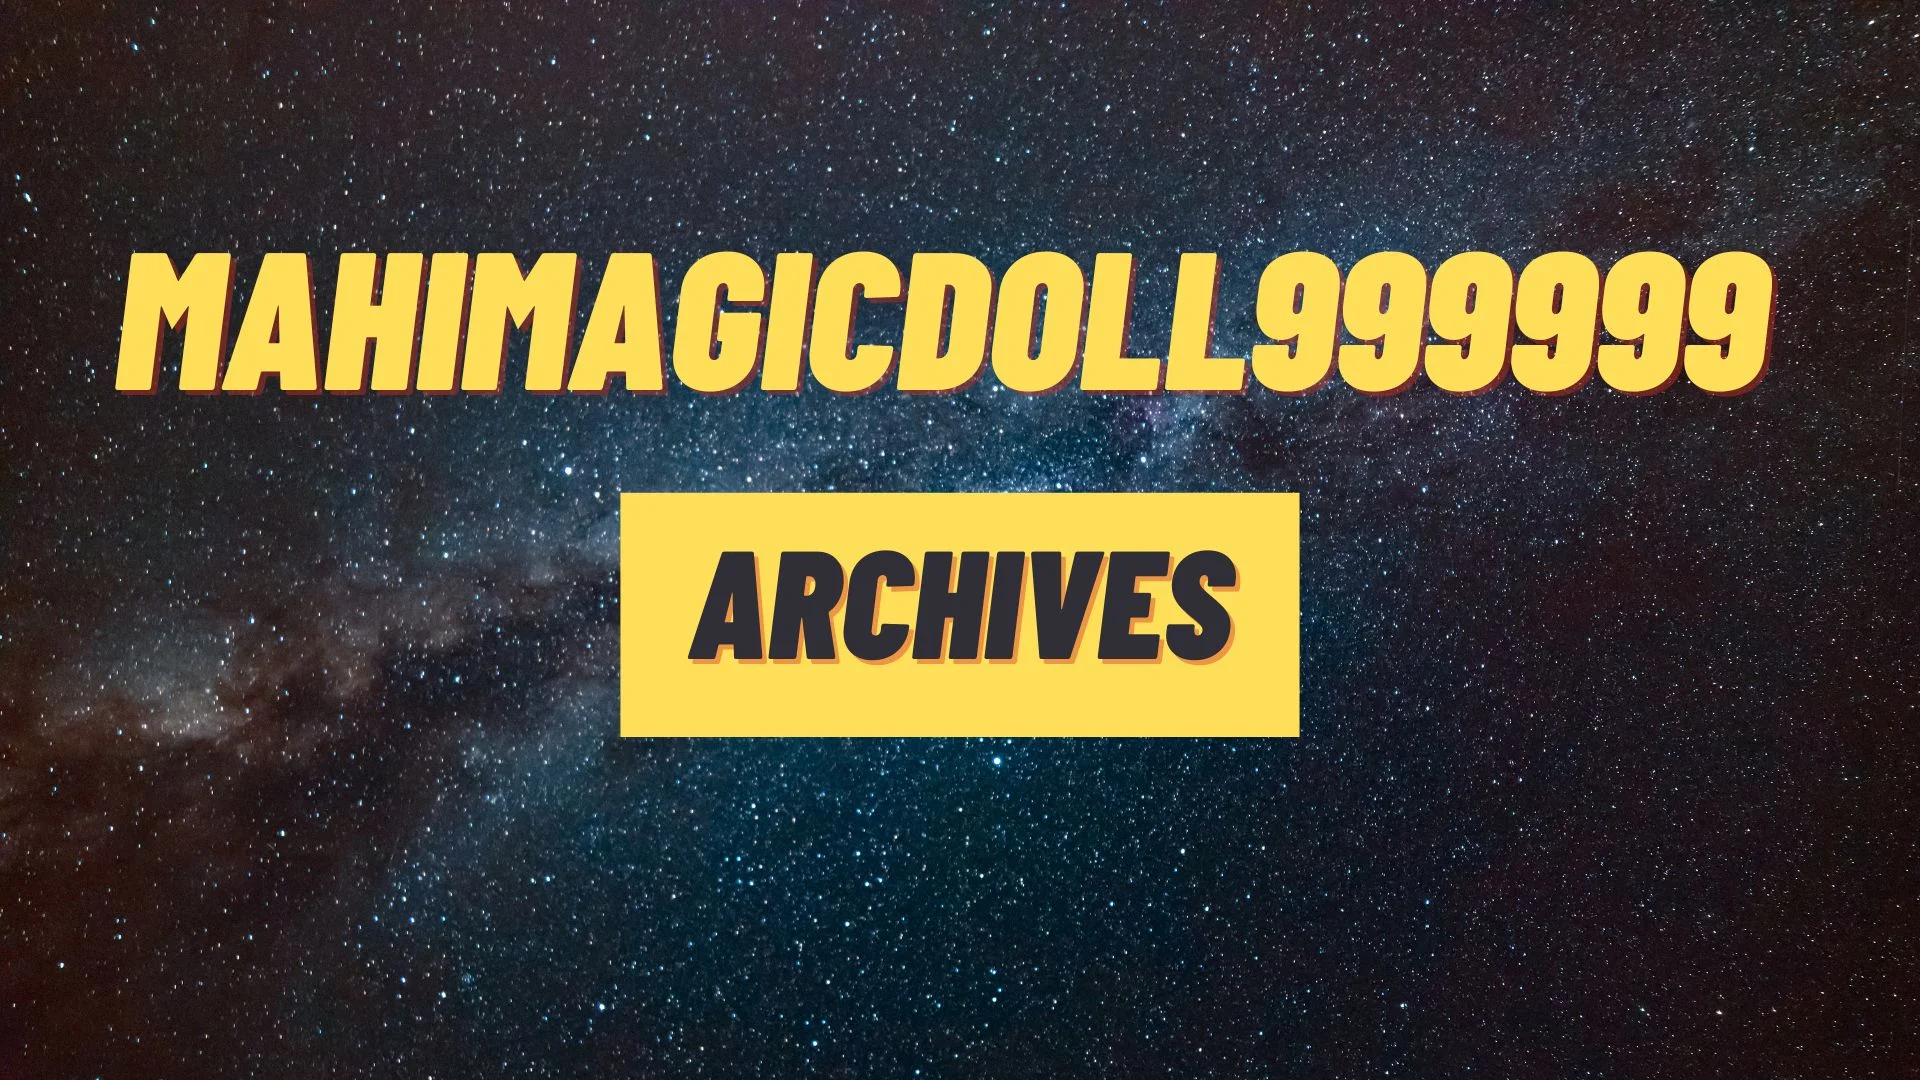 Mahimagicdoll999999 Archives (1)